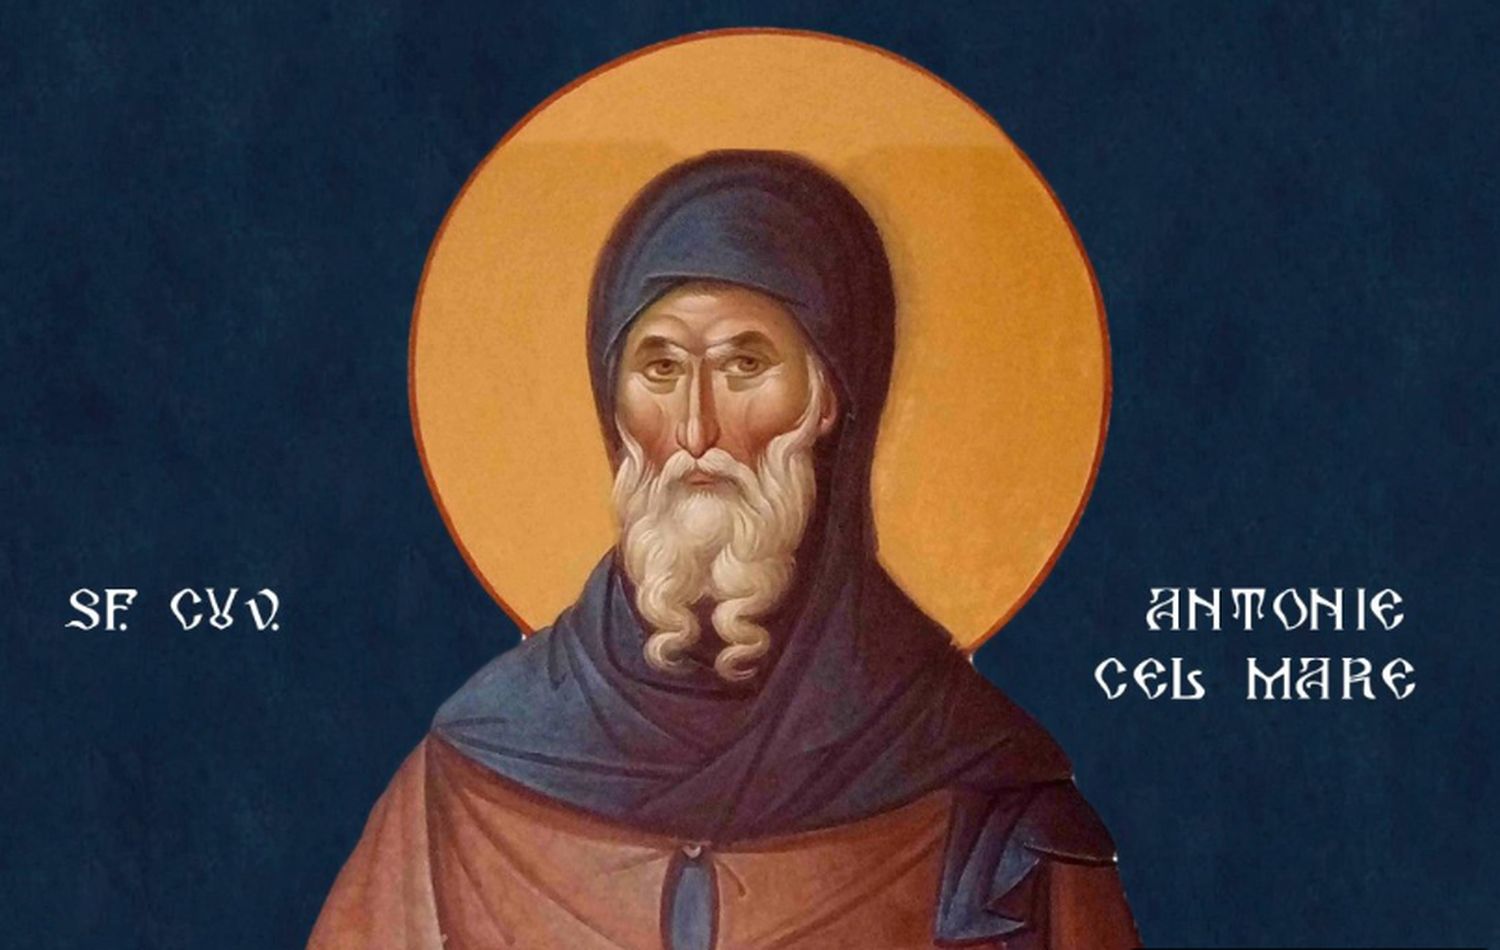 17 ianuarie, Sfântul Antonie cel Mare, prietenul femeilor necăsătorite. Tradiții aducătoare de bucurie